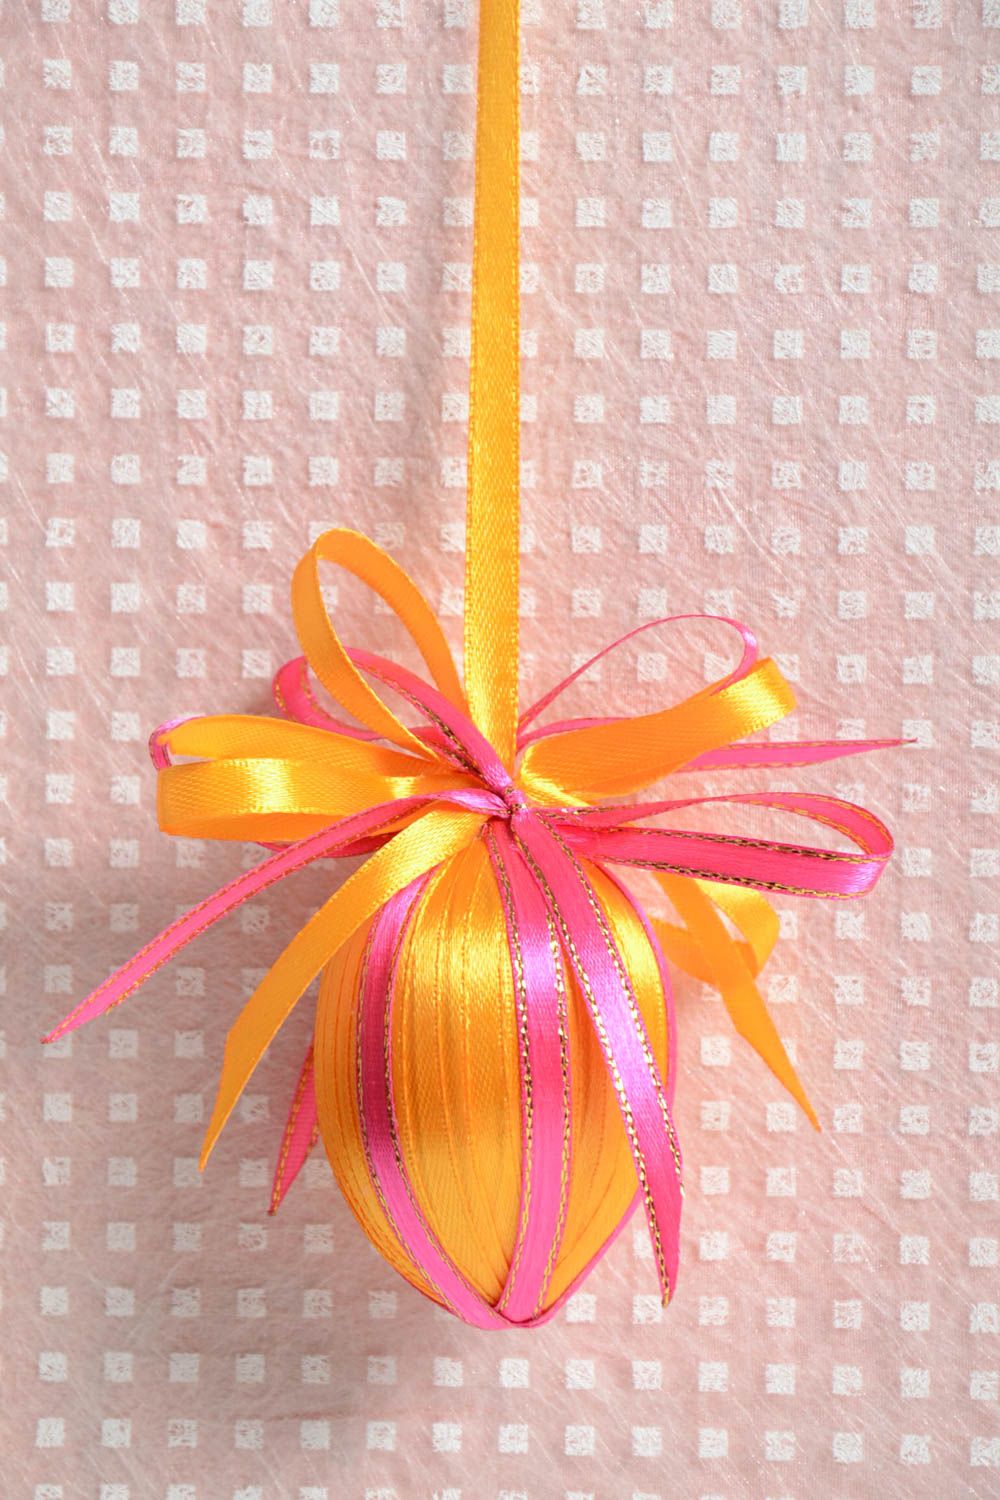 Интерьерная подвеска в виде яйца розовая с желтым красивая для декора хэнд мейд фото 1